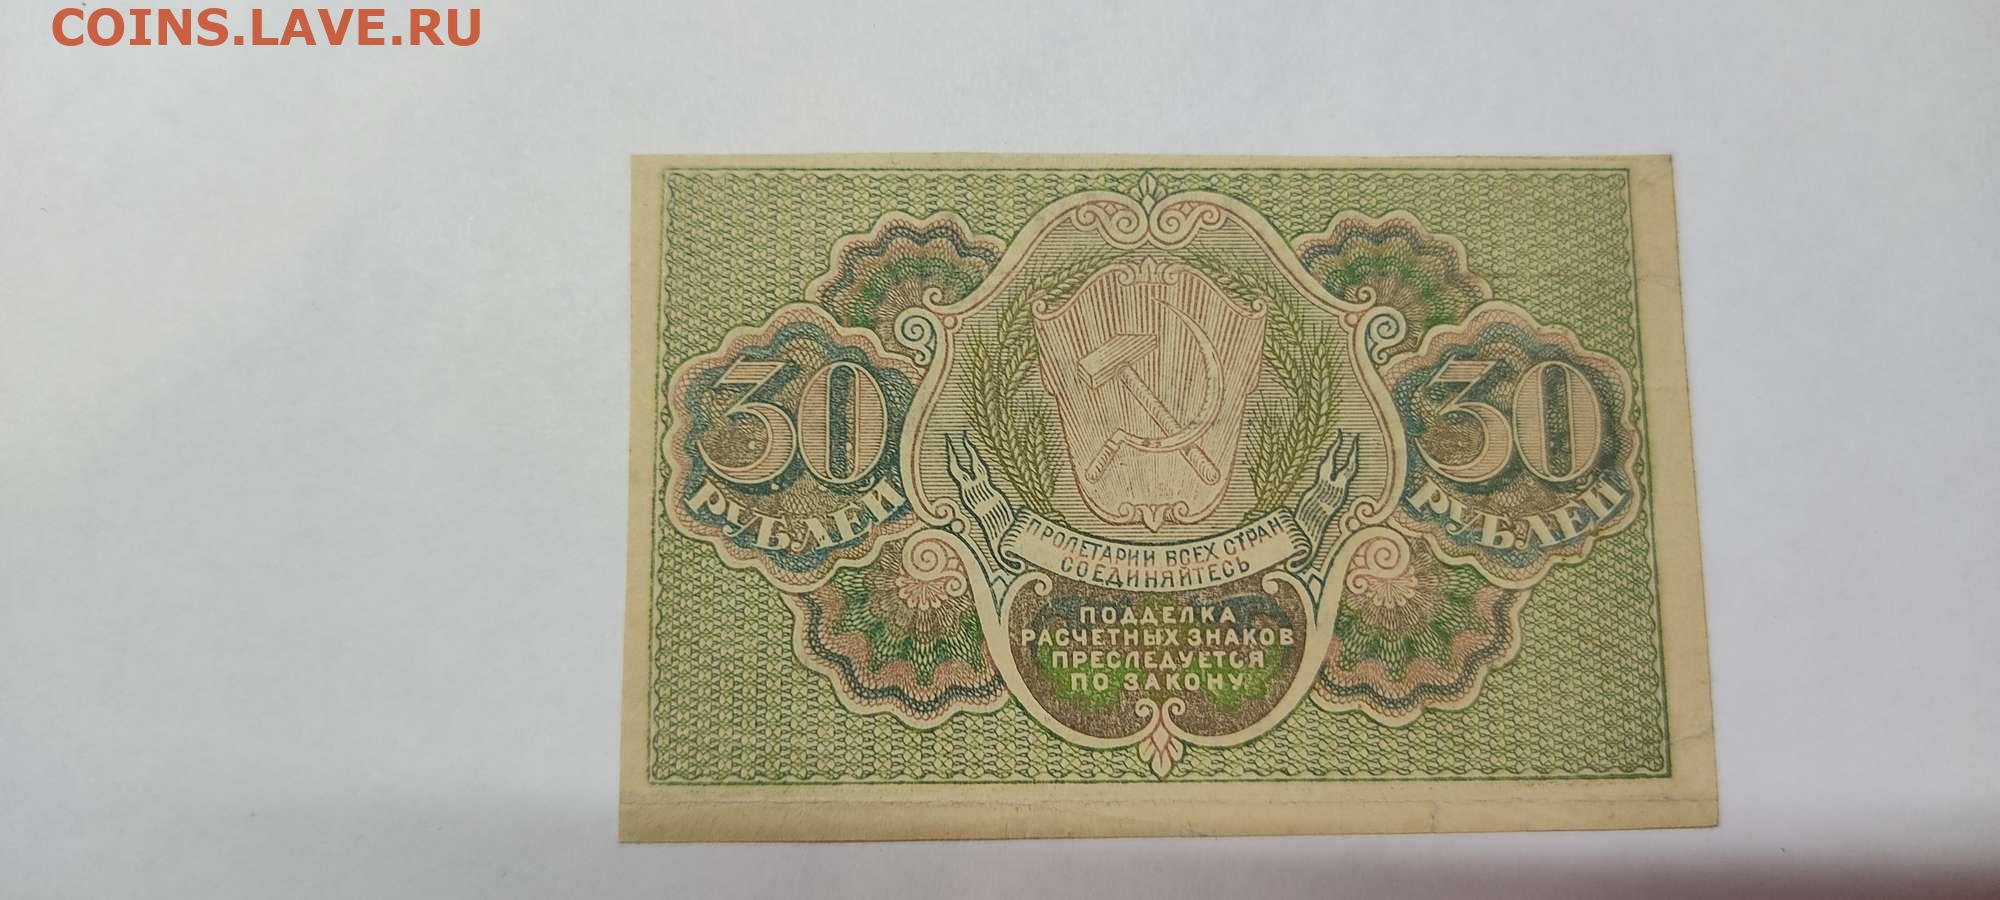 27 60 в рублях. Расчетный знак 30 рублей. Расчетный знак монеты. 60 Рублей 1919 лист. 30 Рублей.